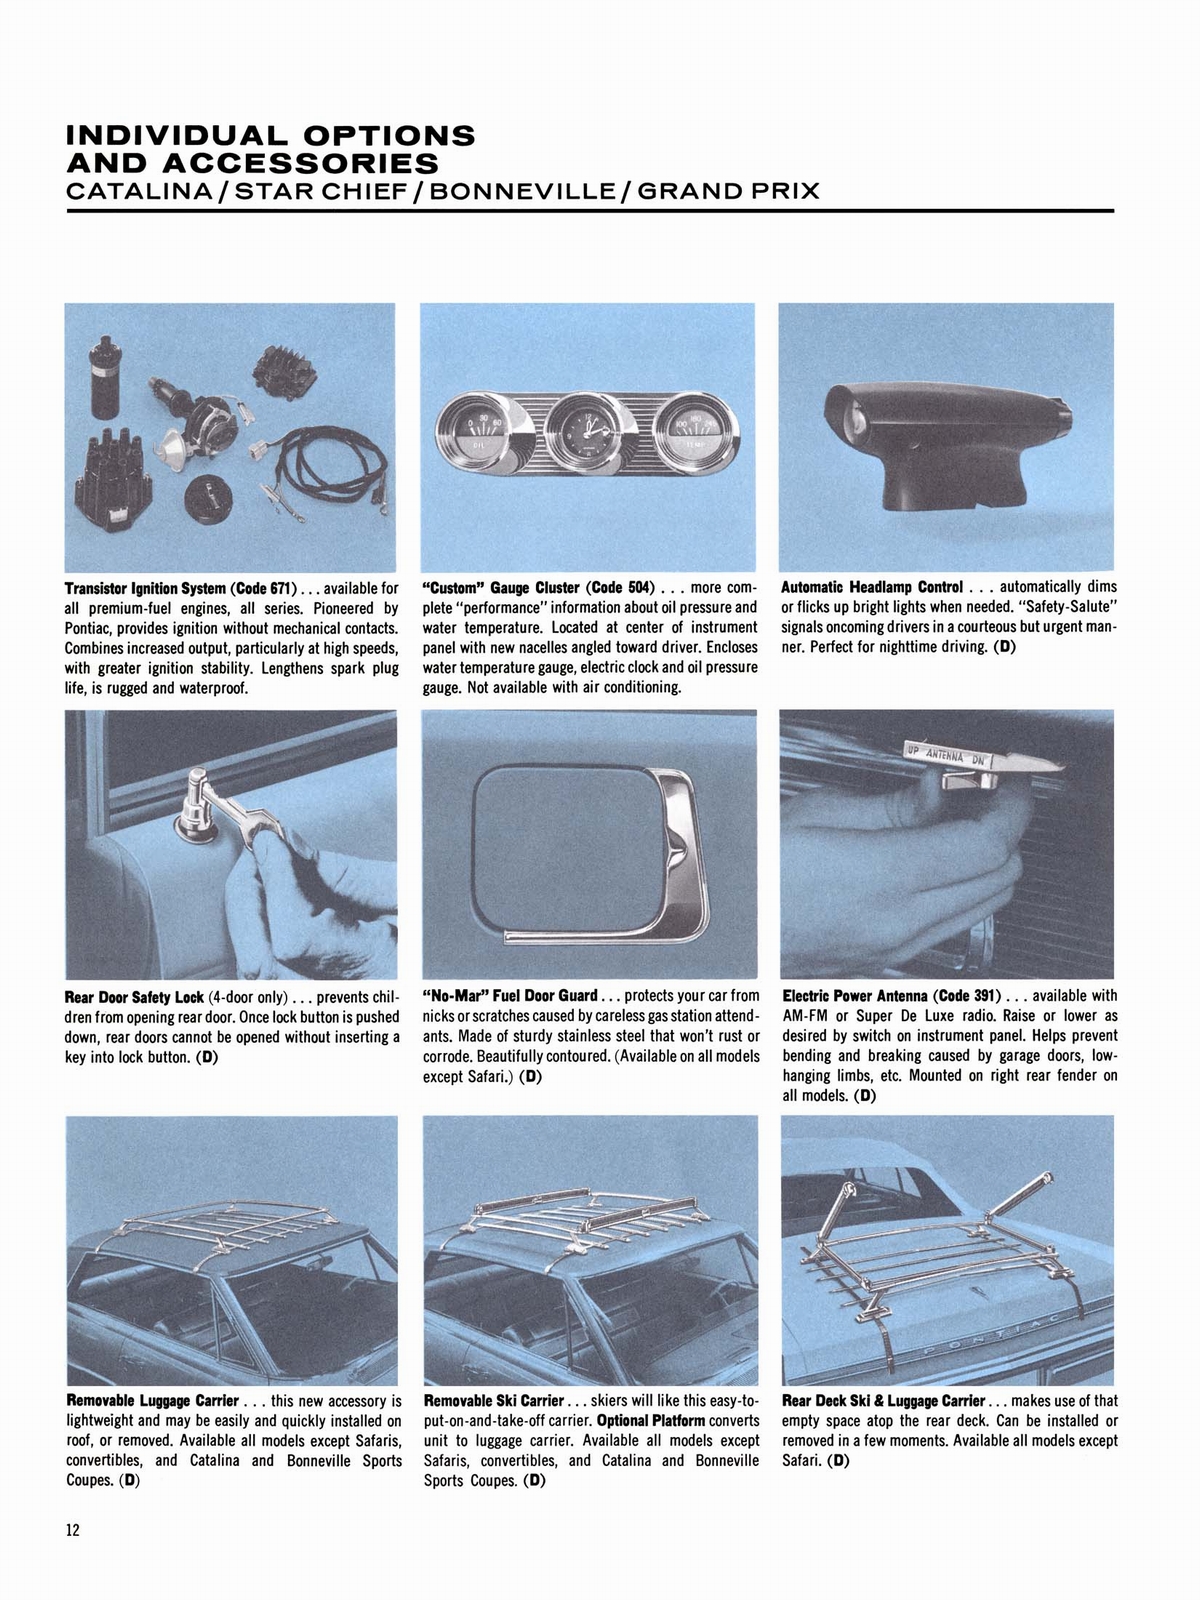 n_1964 Pontiac Accessories-12.jpg